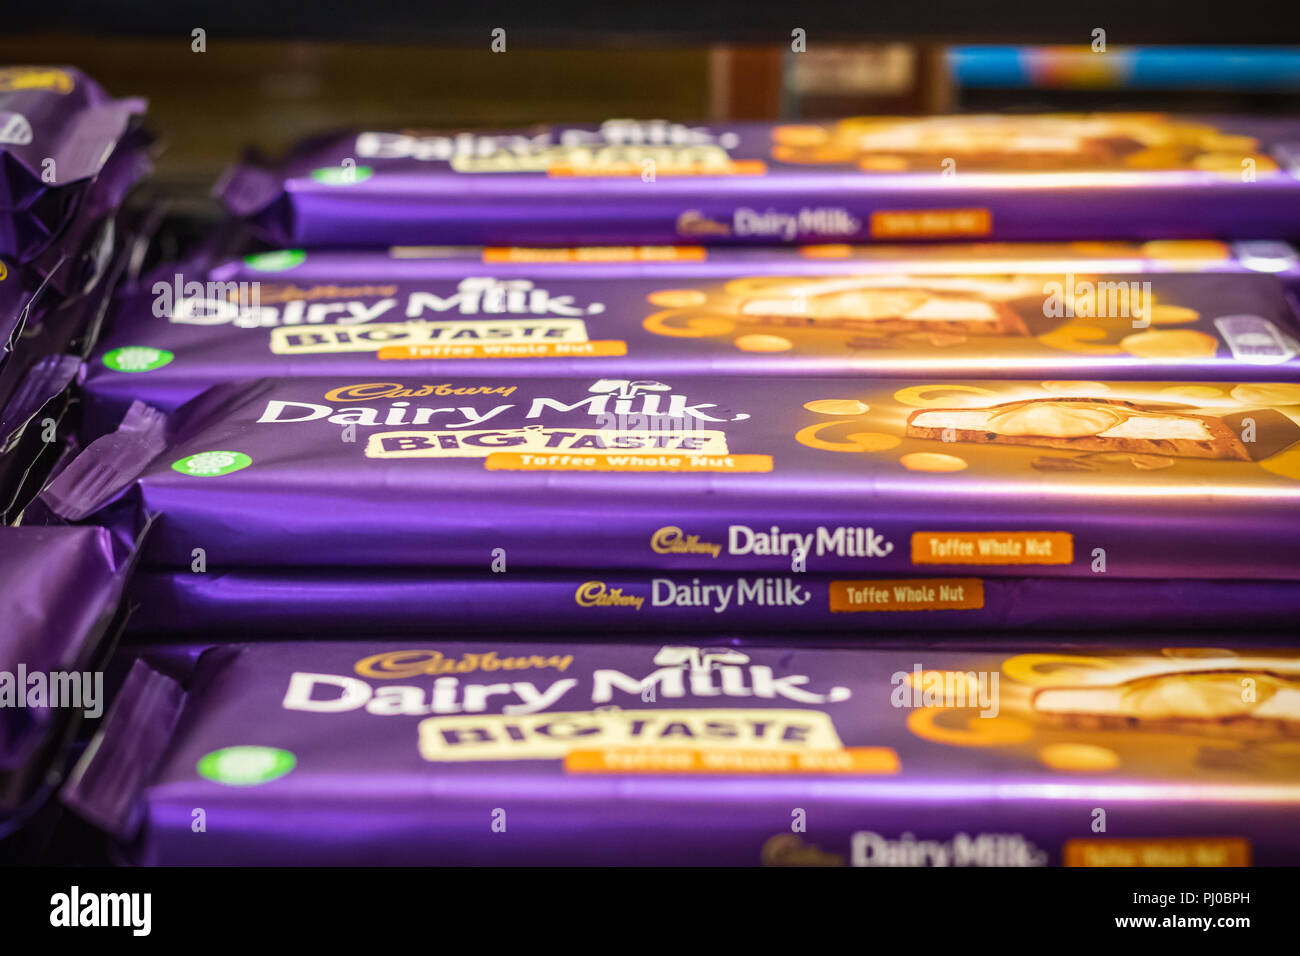 Londres, Royaume-Uni - 12 août 2018 - Pile de barres de chocolat Cadbury sur l'affichage à une boutique hors taxes à l'aéroport London Heathrow Banque D'Images